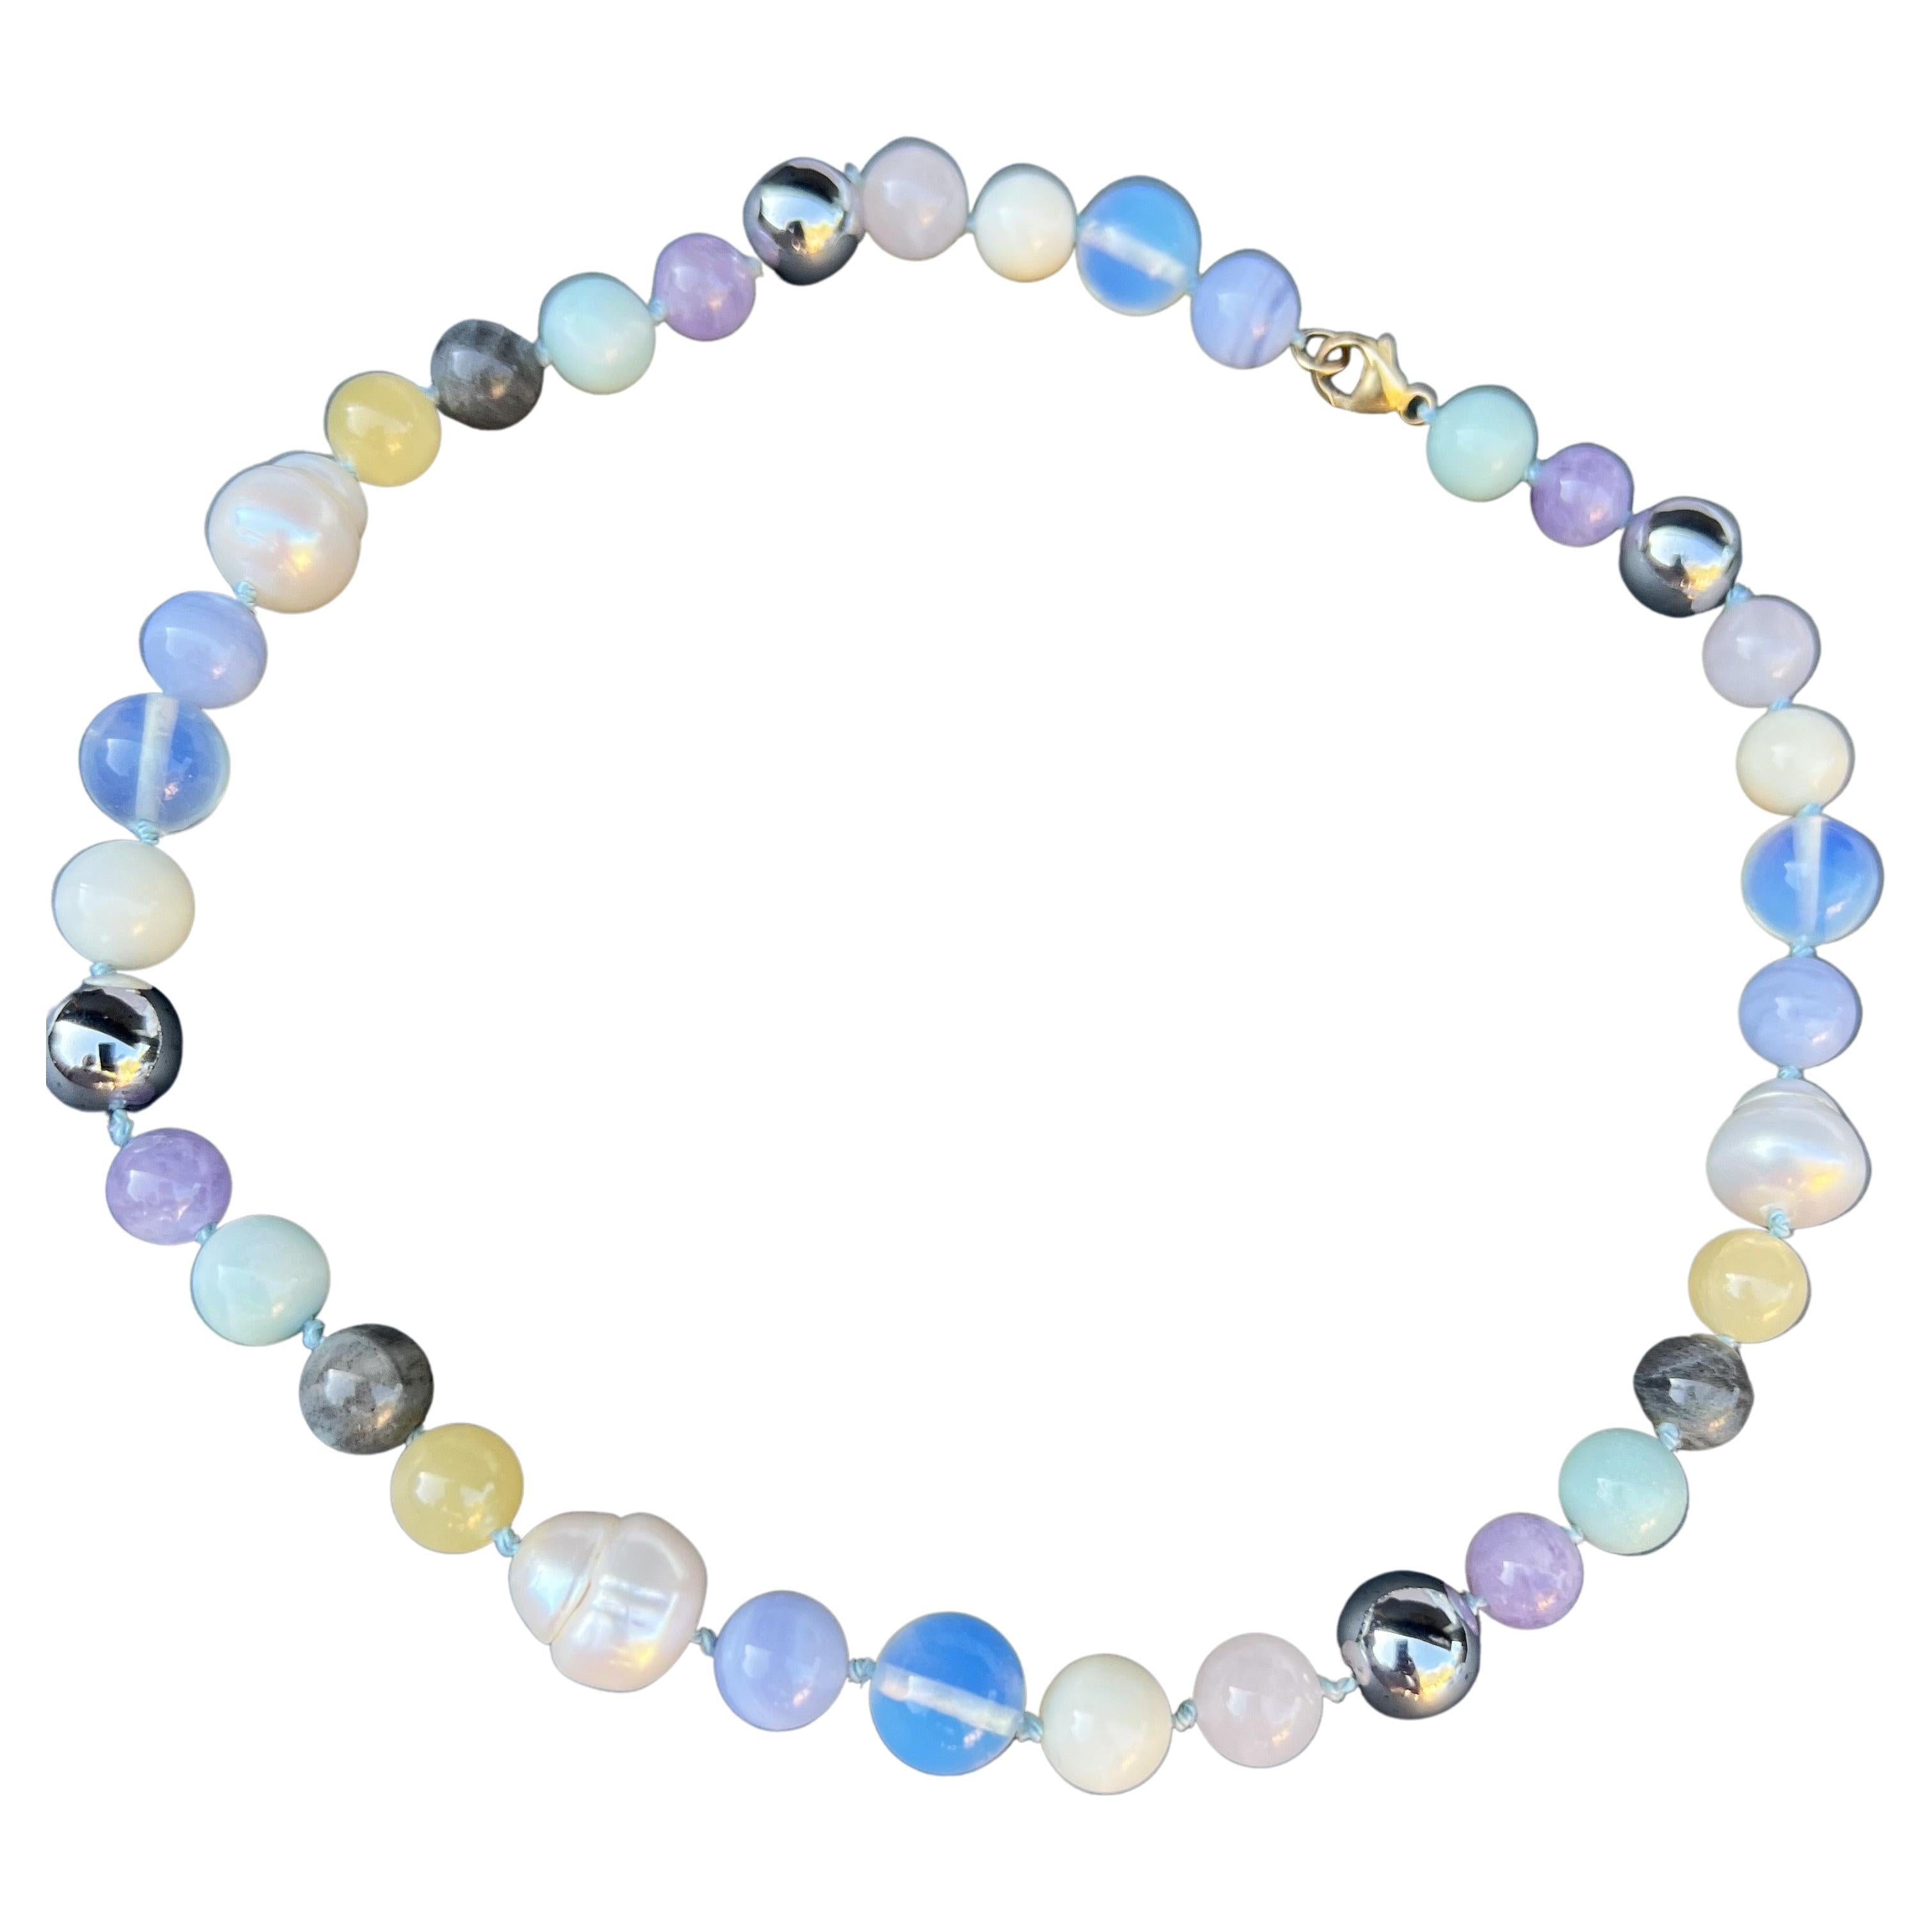 Collier ras du cou J Dauphin en perles semi-précieuses multicolores et pastel